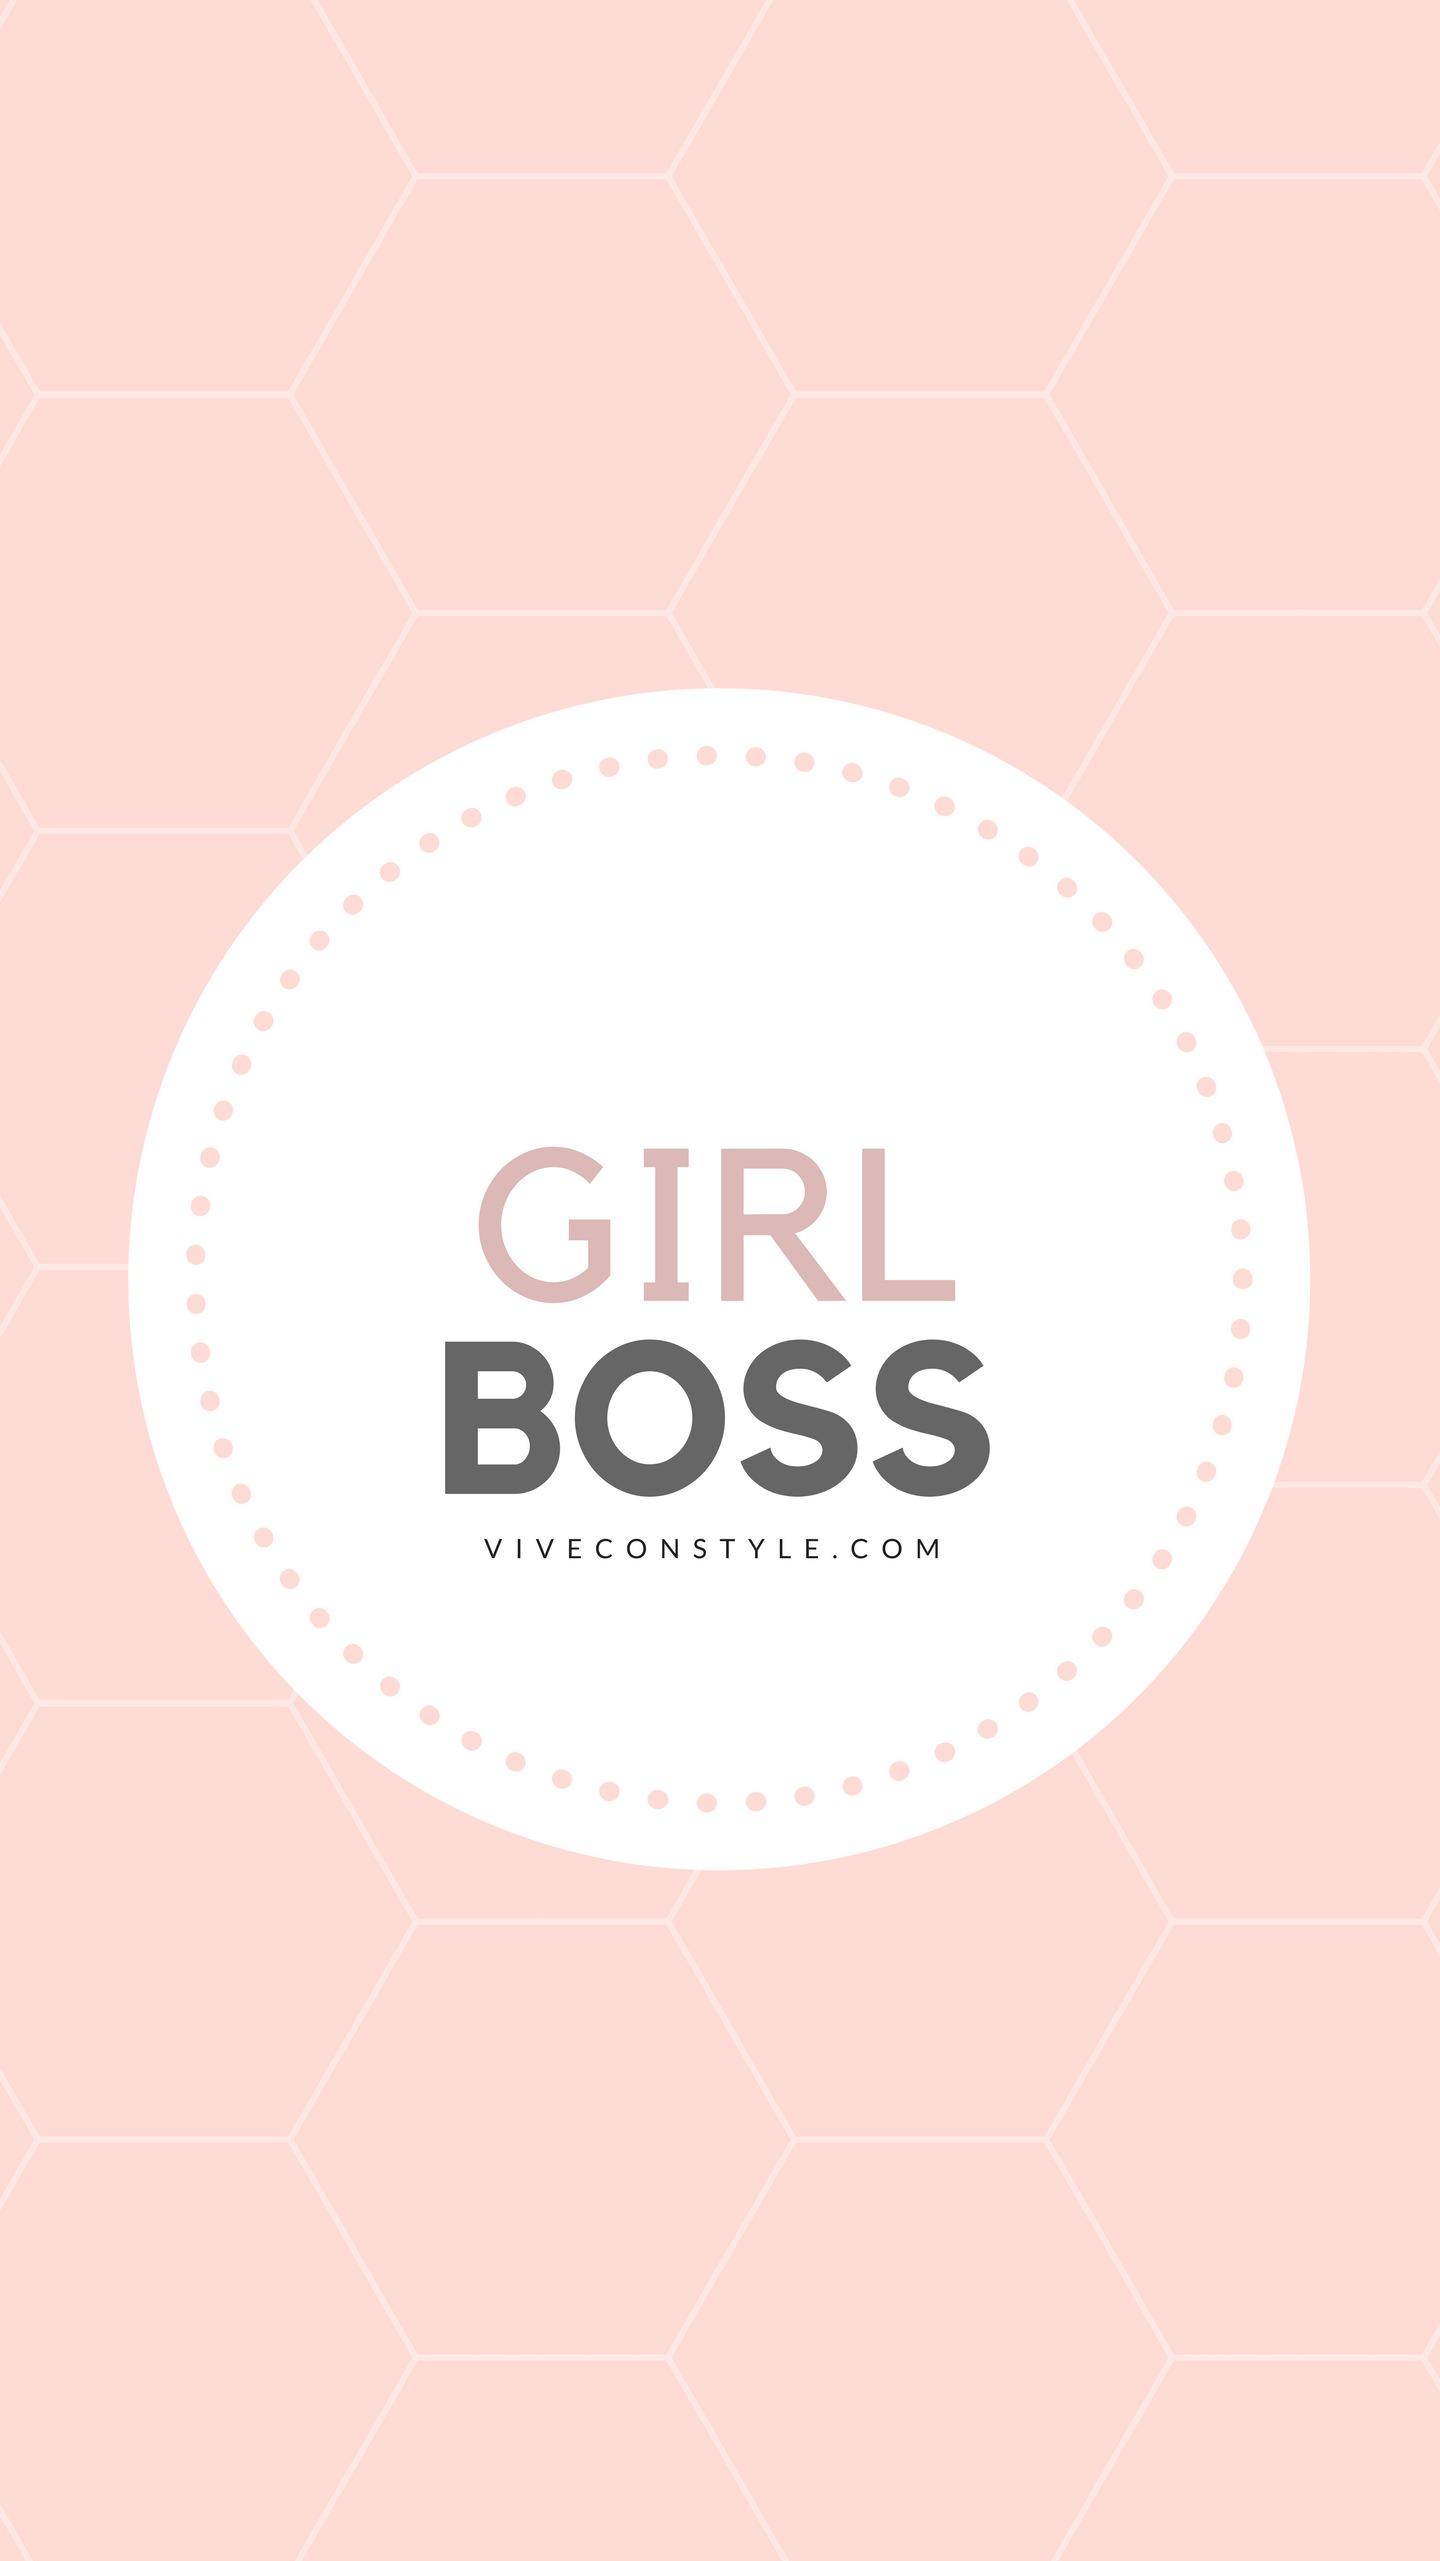 Girl boss Con Style